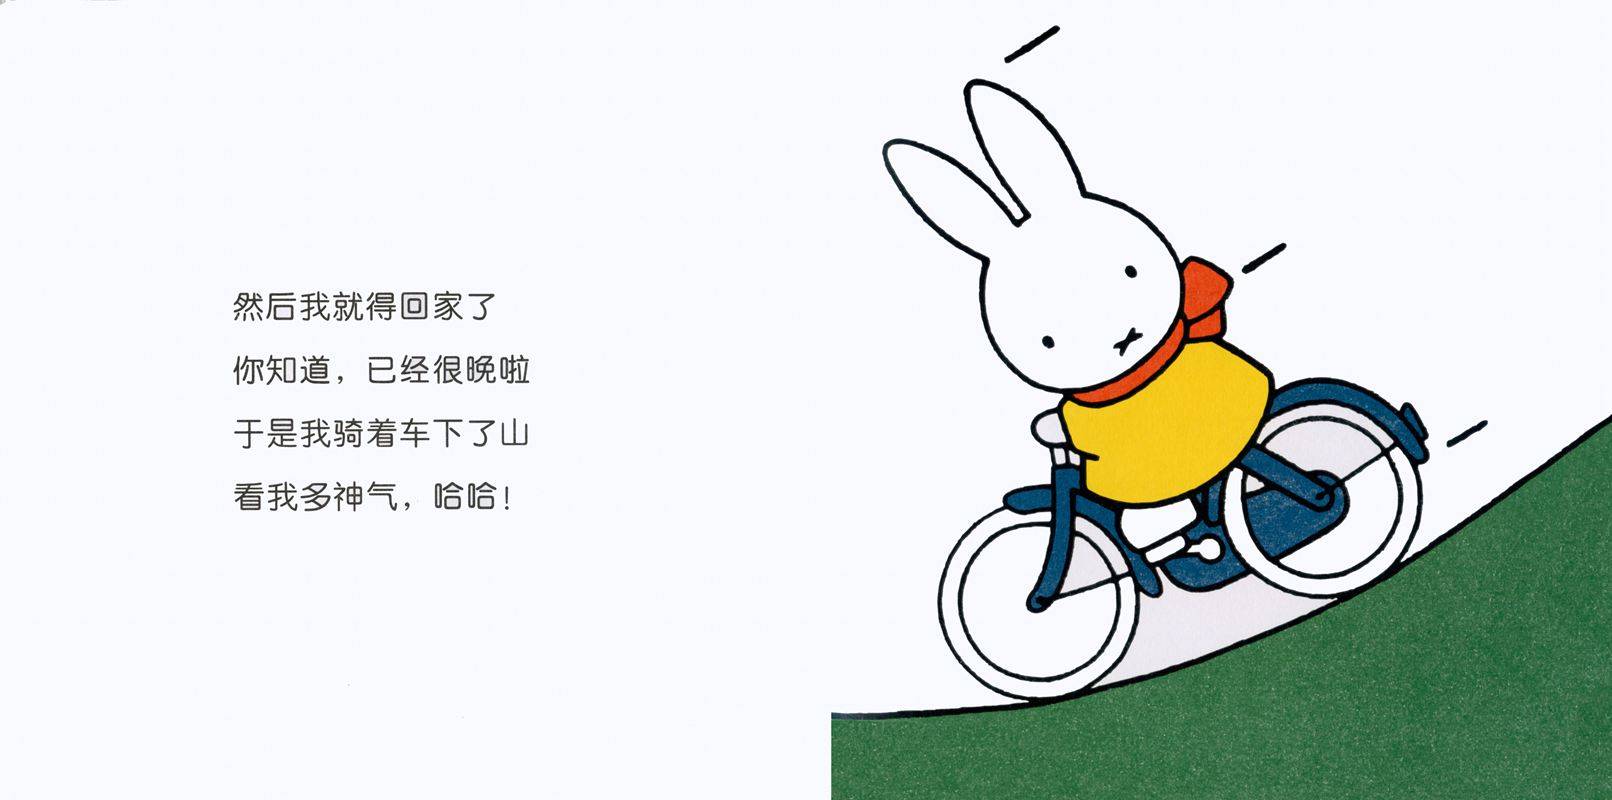 自行车小故事gifqq